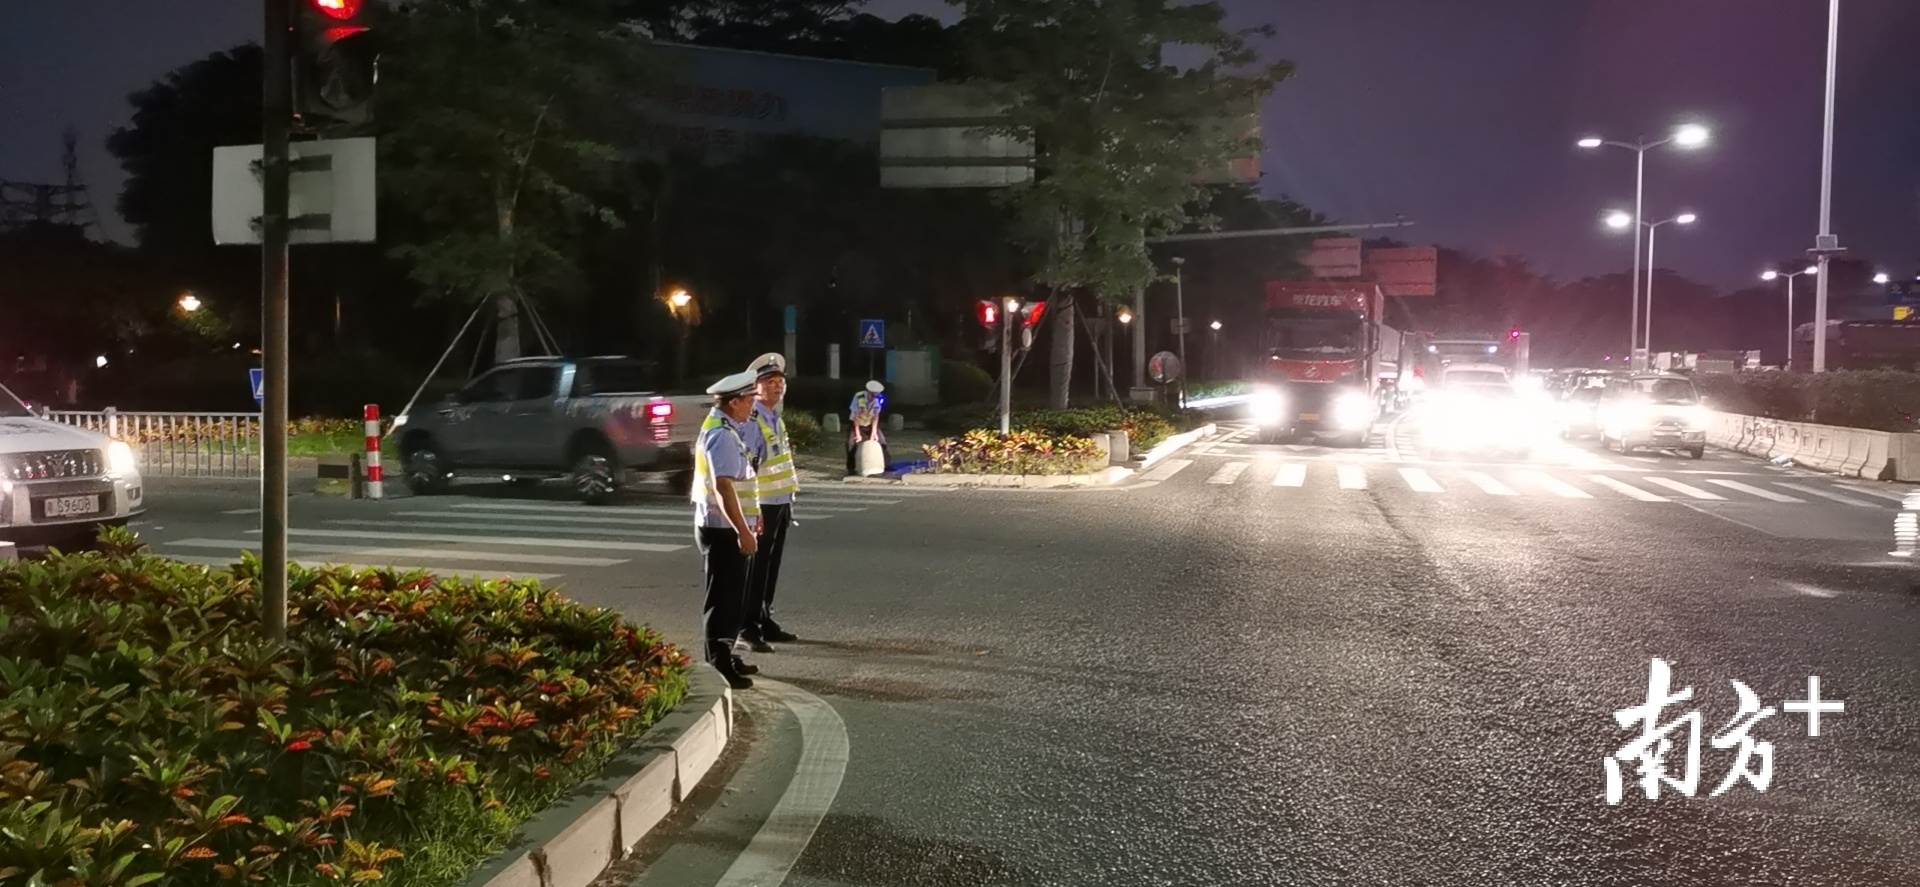 东莞交警开展对小型汽车通行秩序整治